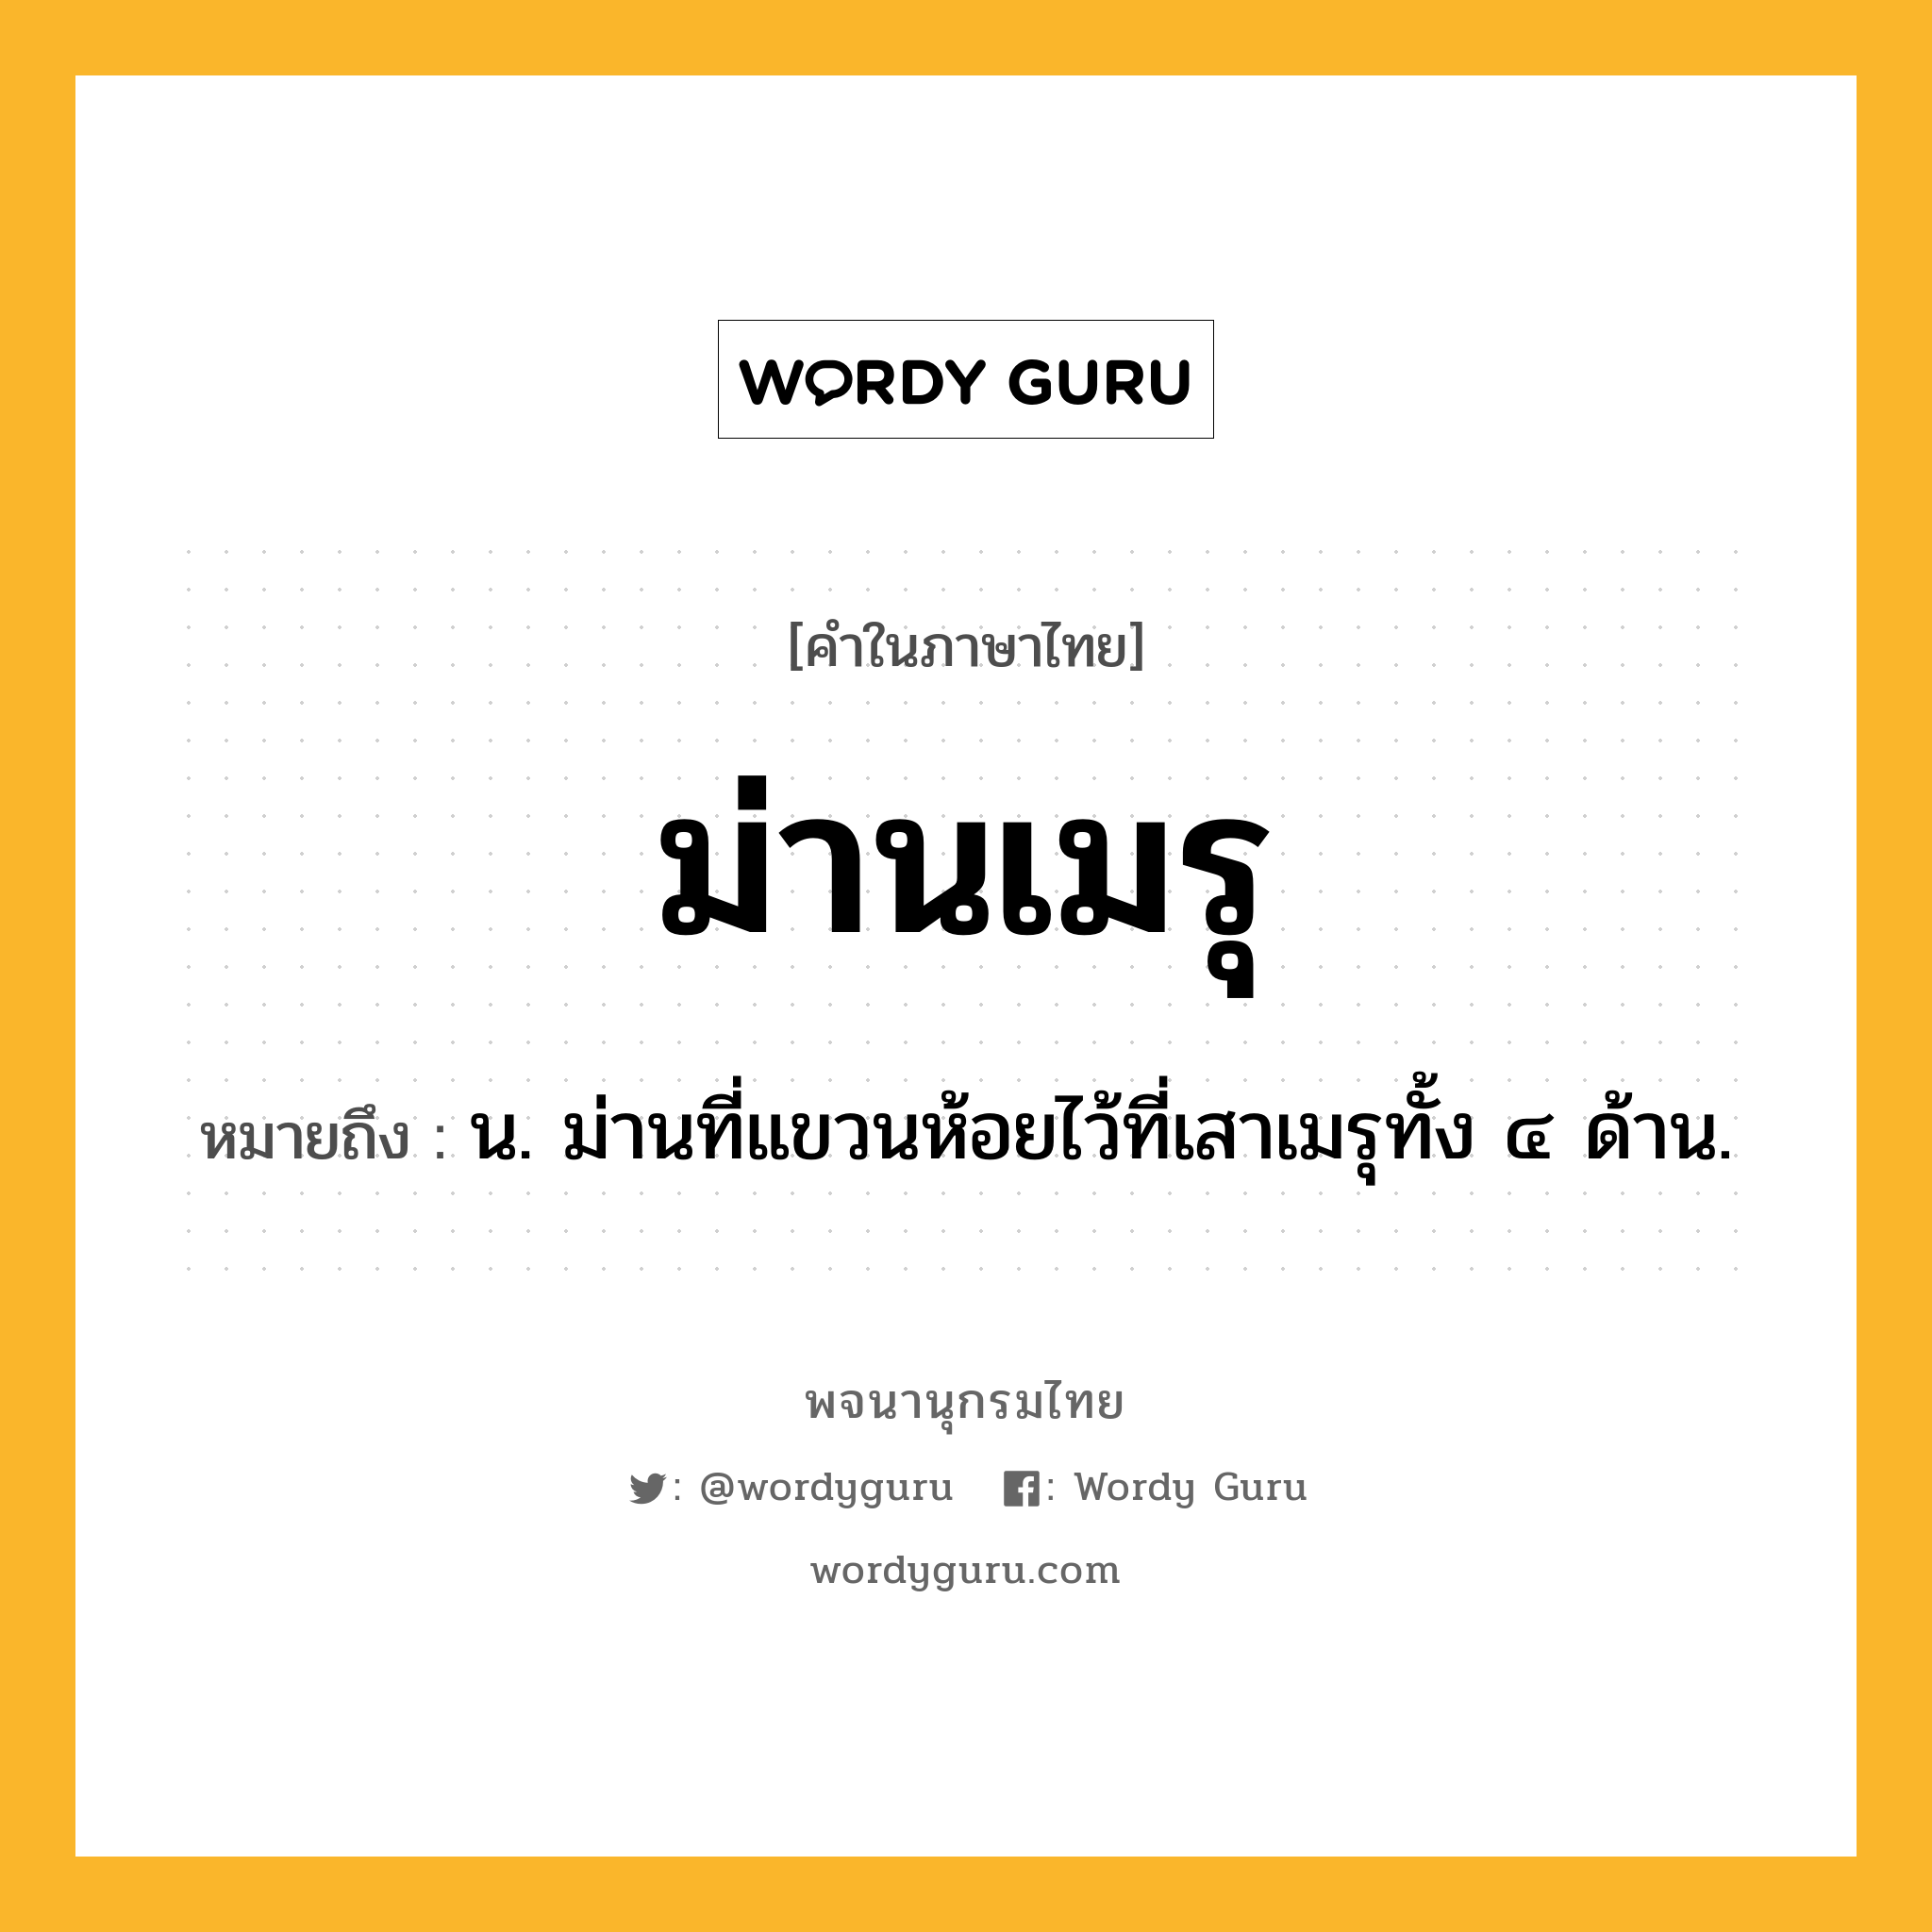 ม่านเมรุ หมายถึงอะไร?, คำในภาษาไทย ม่านเมรุ หมายถึง น. ม่านที่แขวนห้อยไว้ที่เสาเมรุทั้ง ๔ ด้าน.